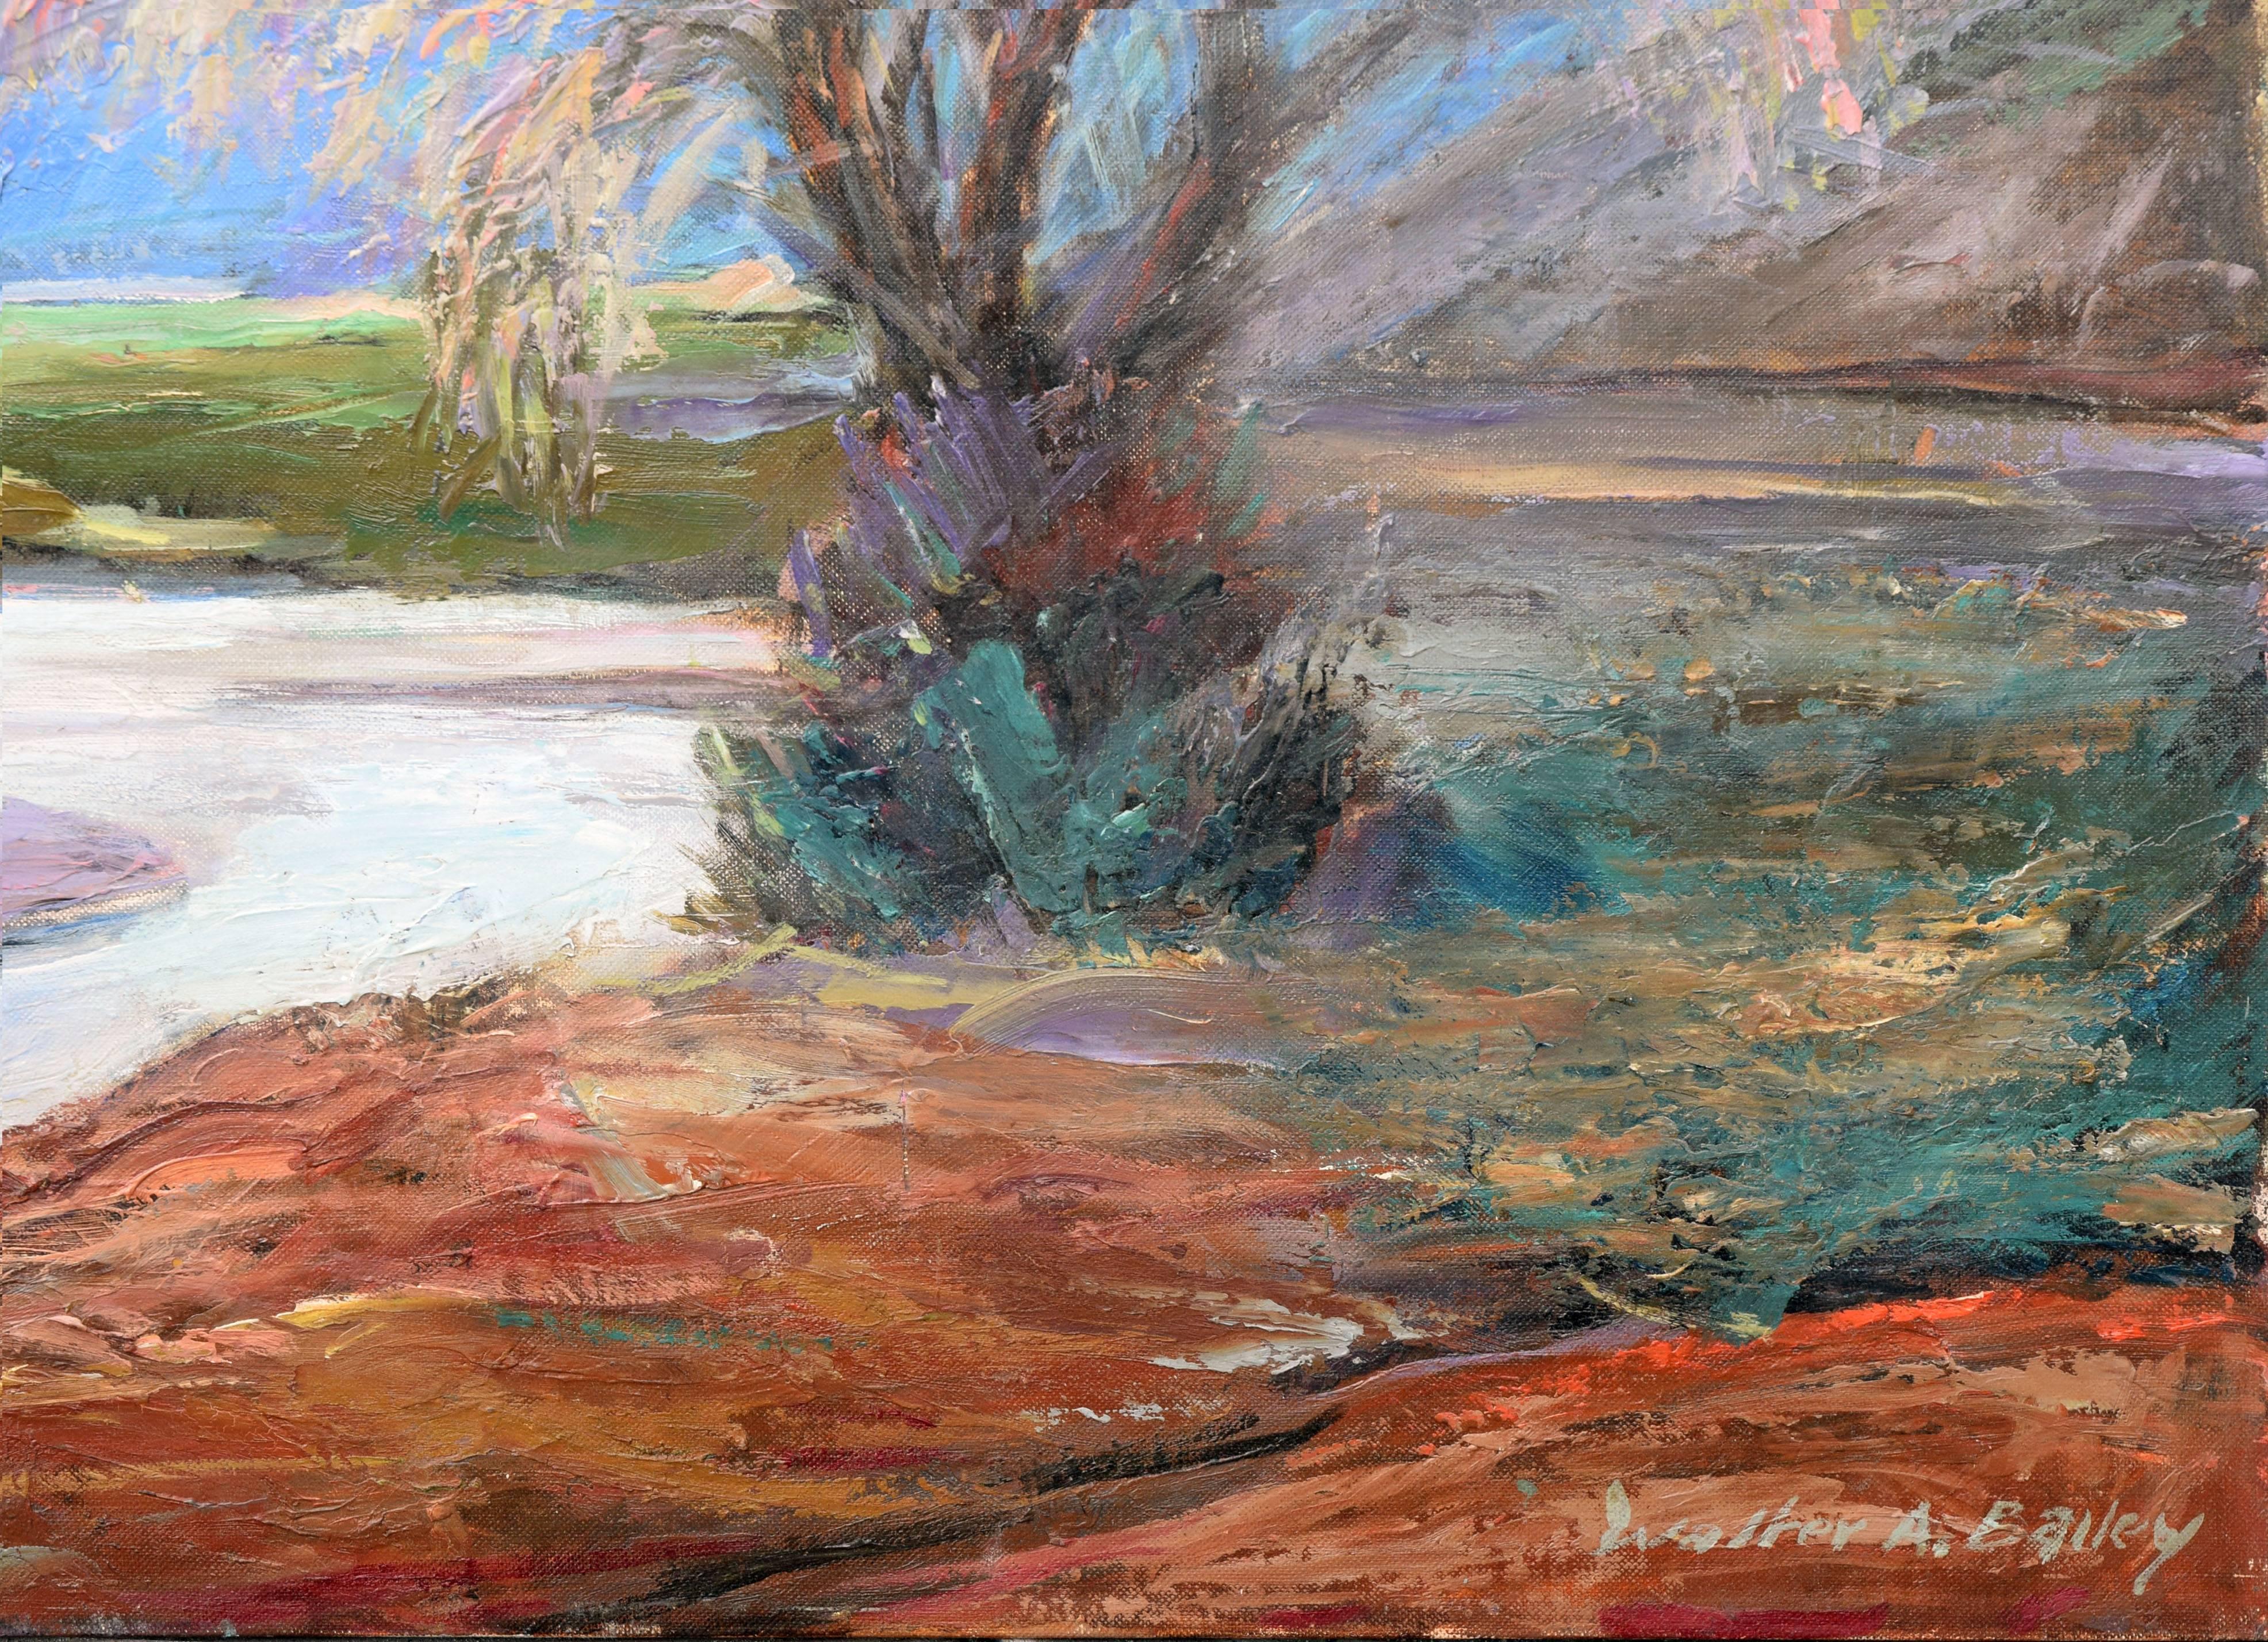 Importante peinture de paysage représentant la rivière et les buttes de Taos, Nouveau-Mexique, par Walter Alexander Bailey (américain, 1894-1989). Rendu dans des couleurs saturées, un arbre solitaire se tient au bord d'une rivière. La rivière